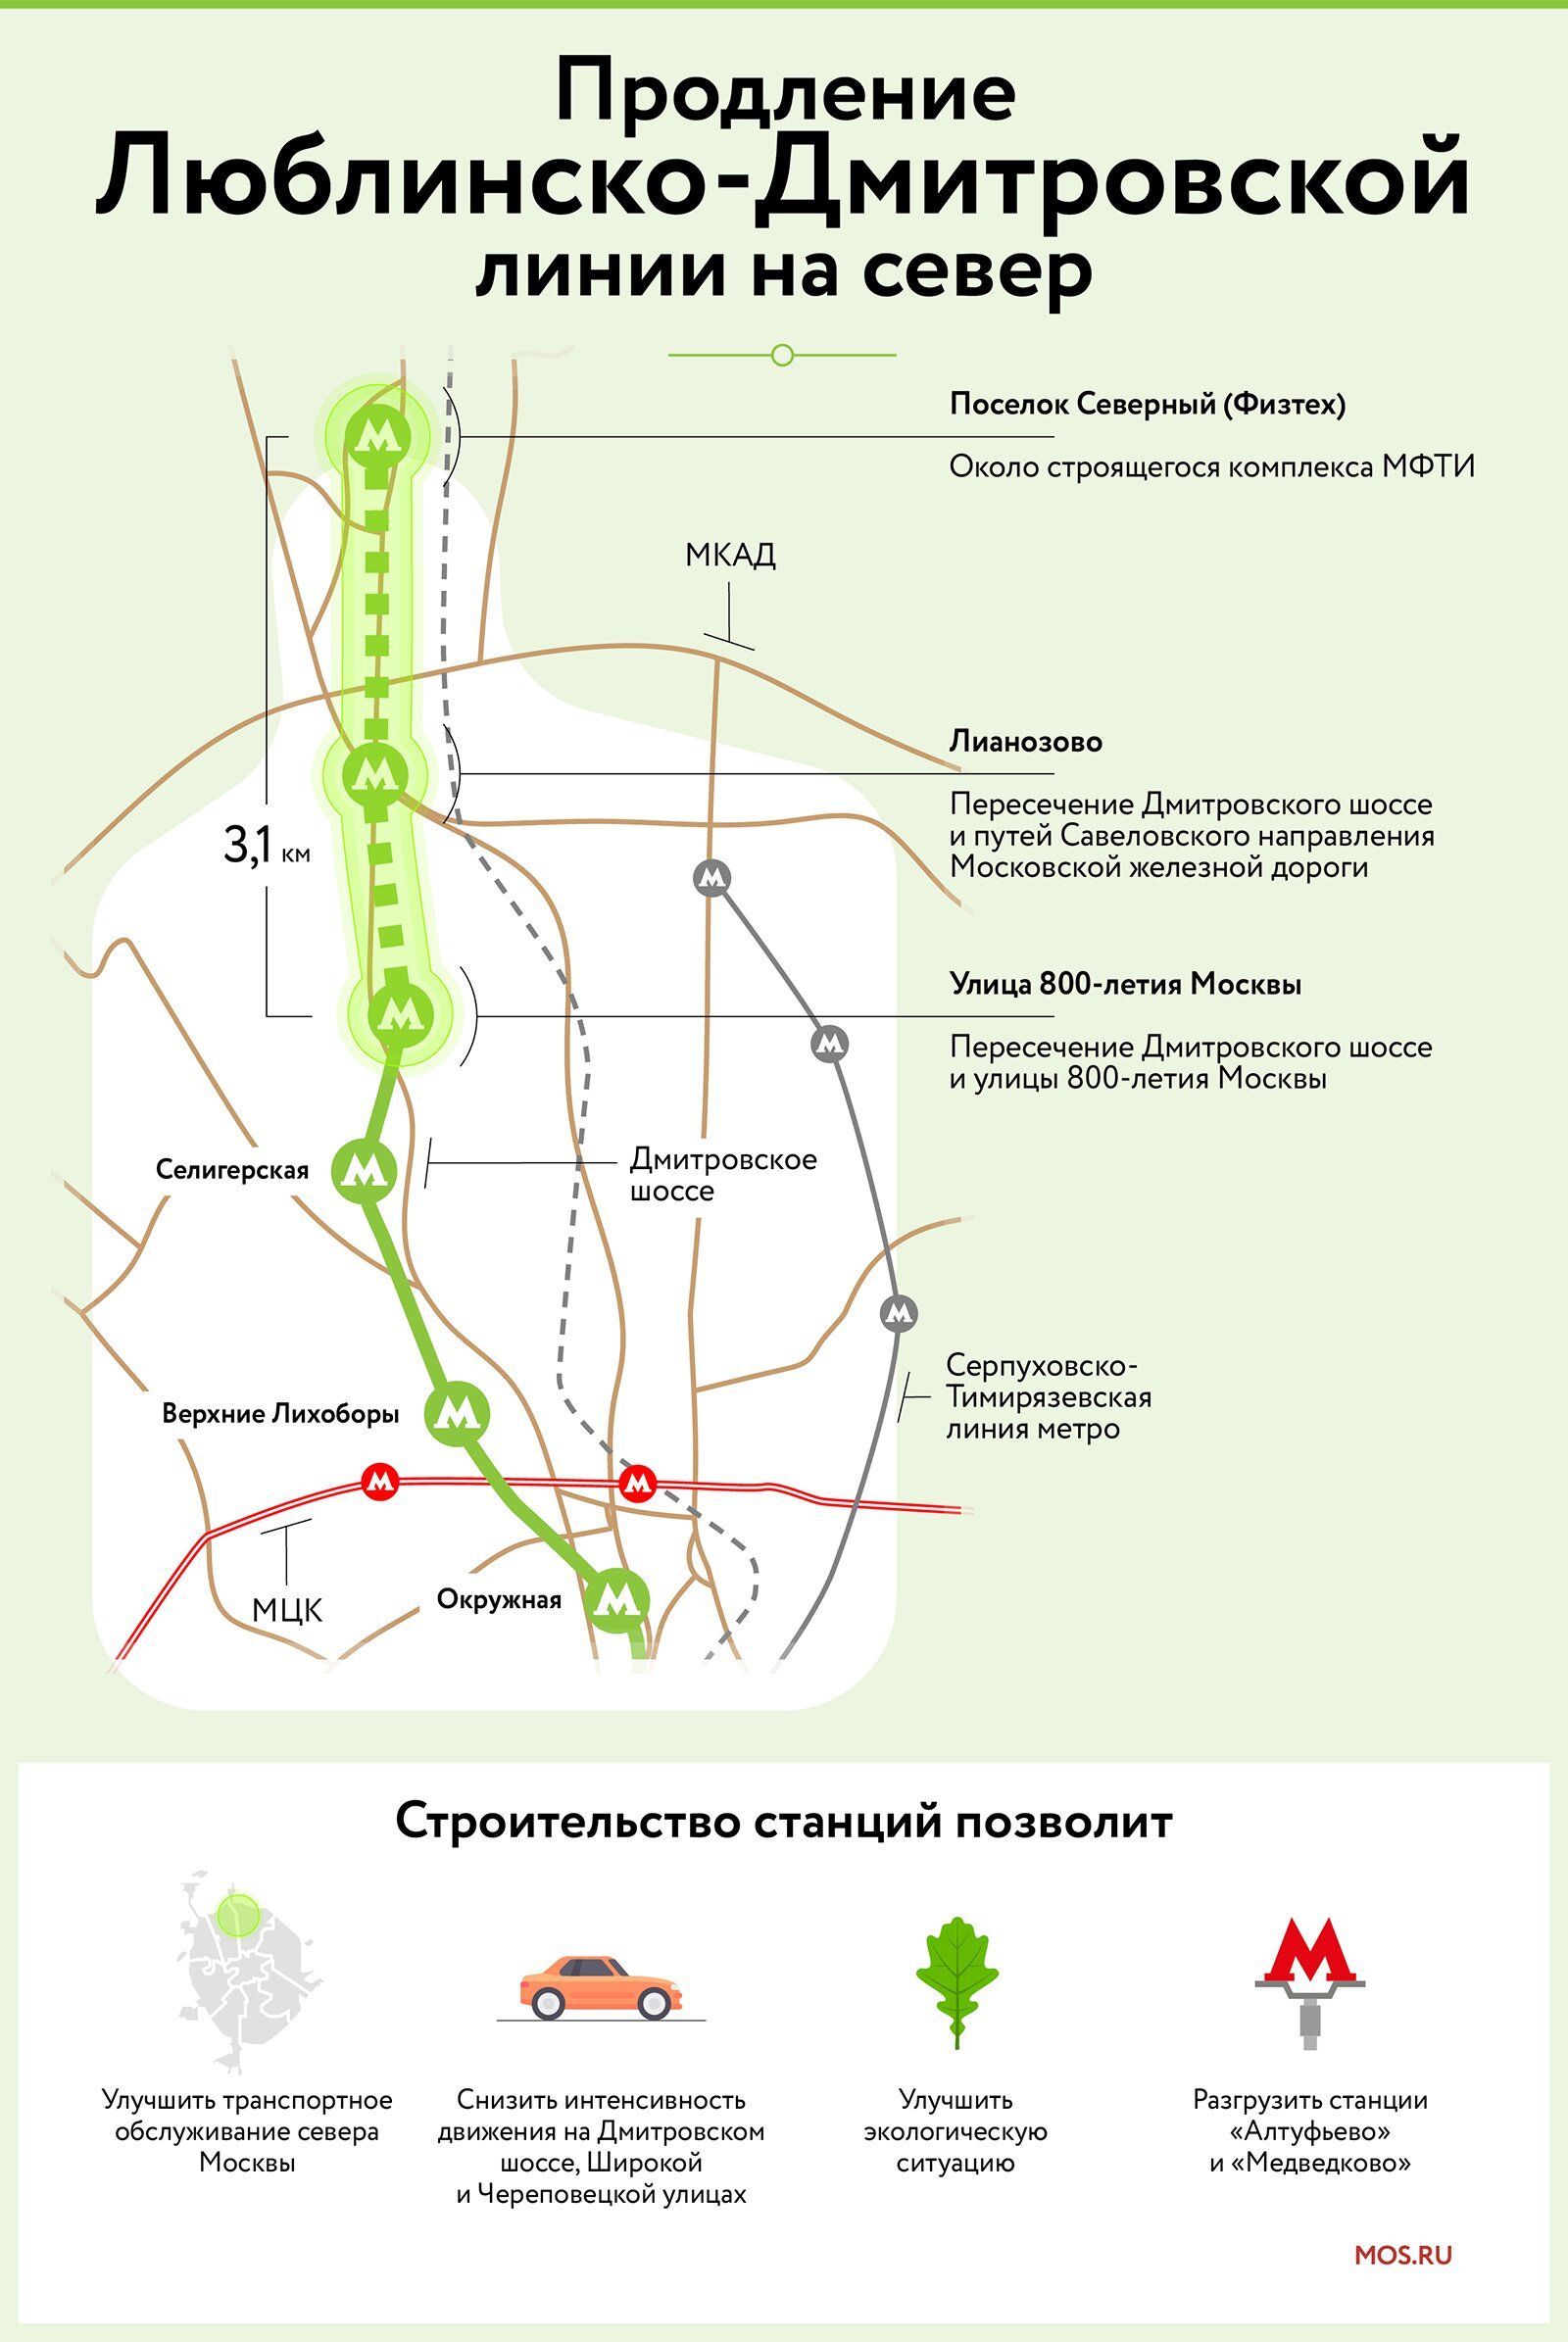 Открытие трех станций Люблинско-Дмитровской линии метро запланировано на 2023 год